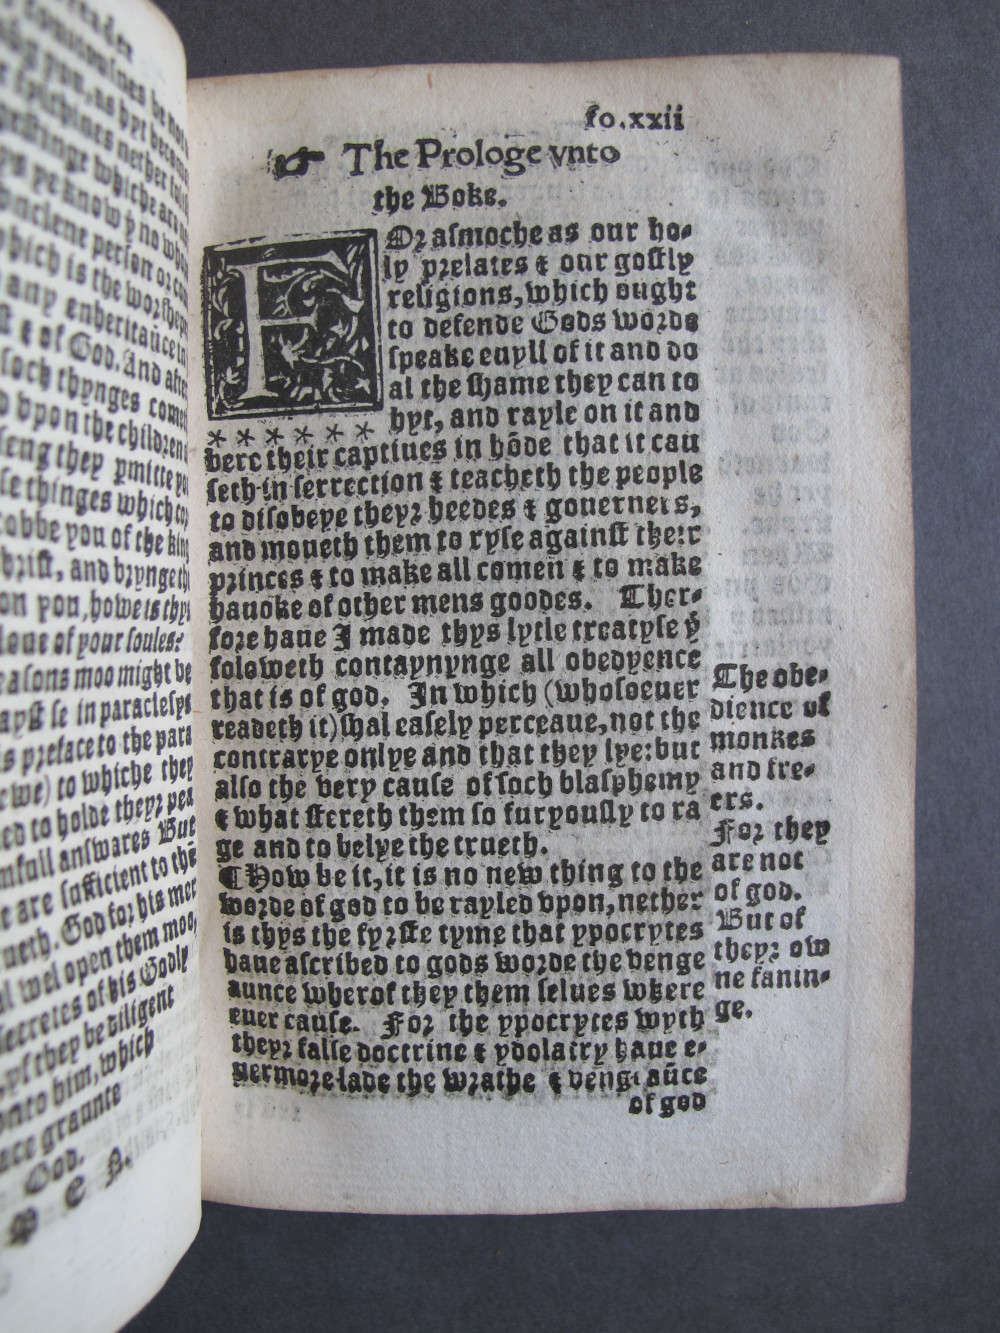 1 Folio C6 recto